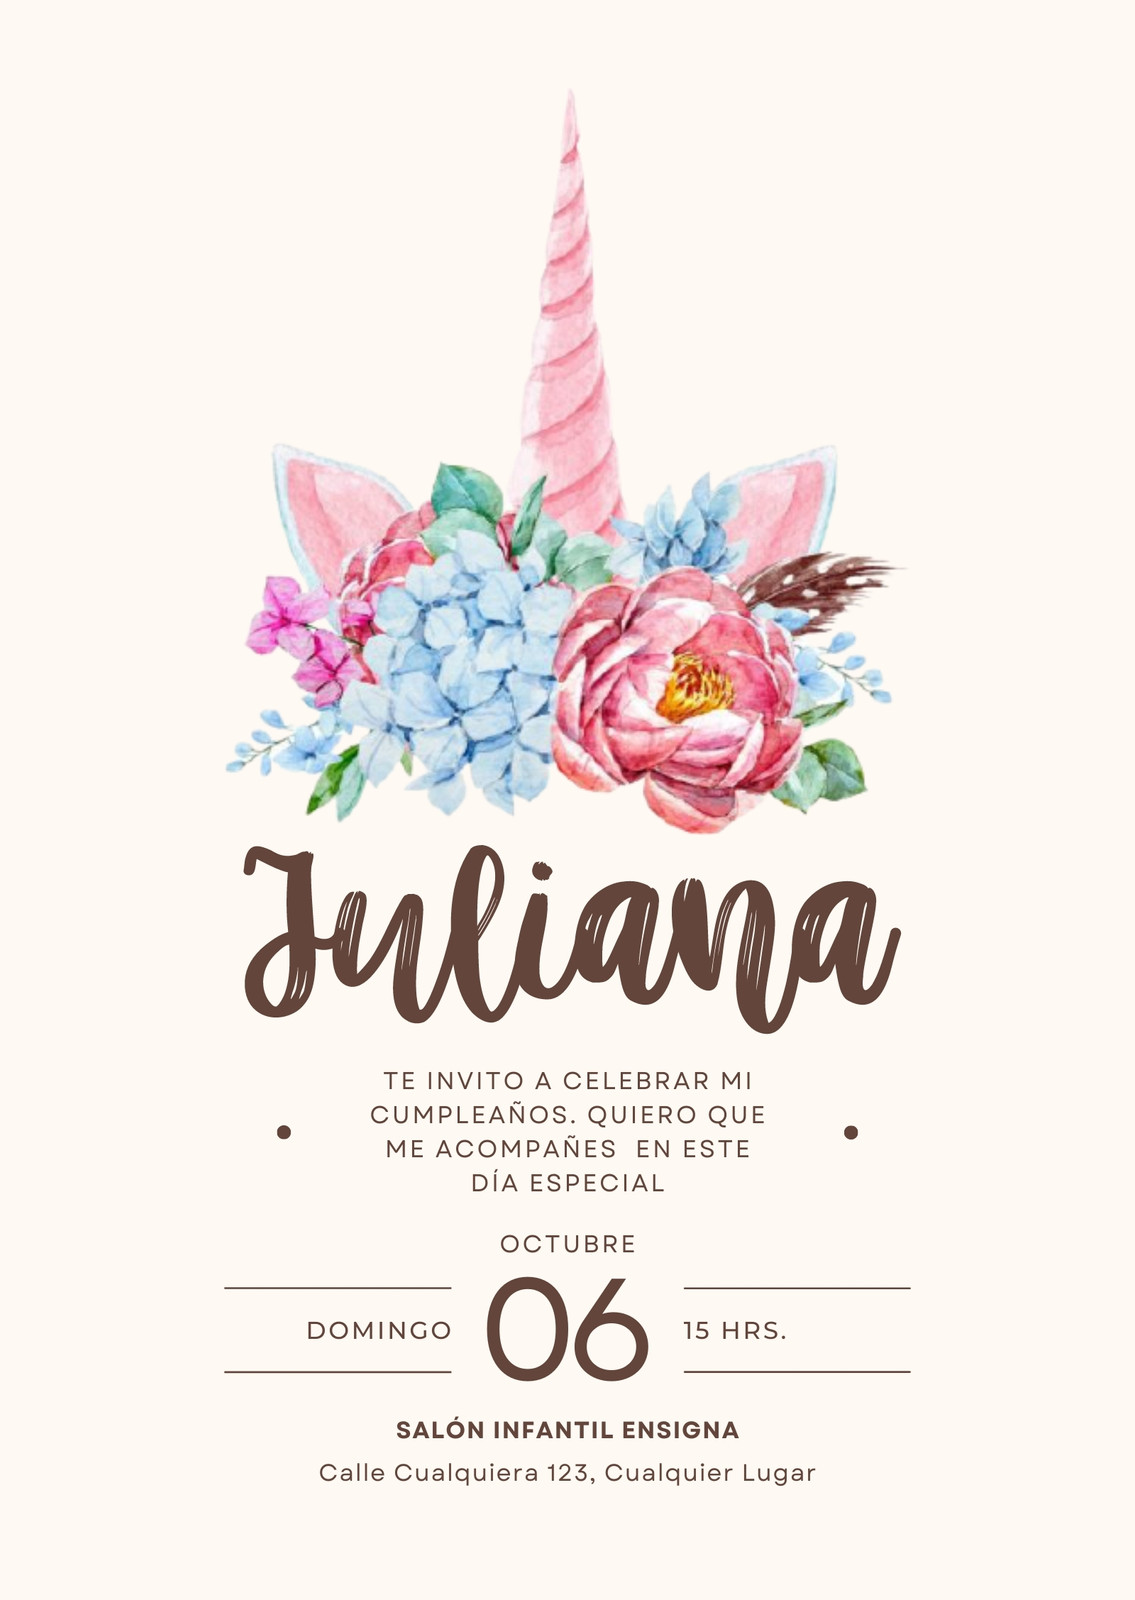 97 Ideas de decoración de Cumpleaños de Unicornios  Ideas de fiesta  unicornio, Fiestas de cumpleaños unicornio, Fiesta tema unicornio